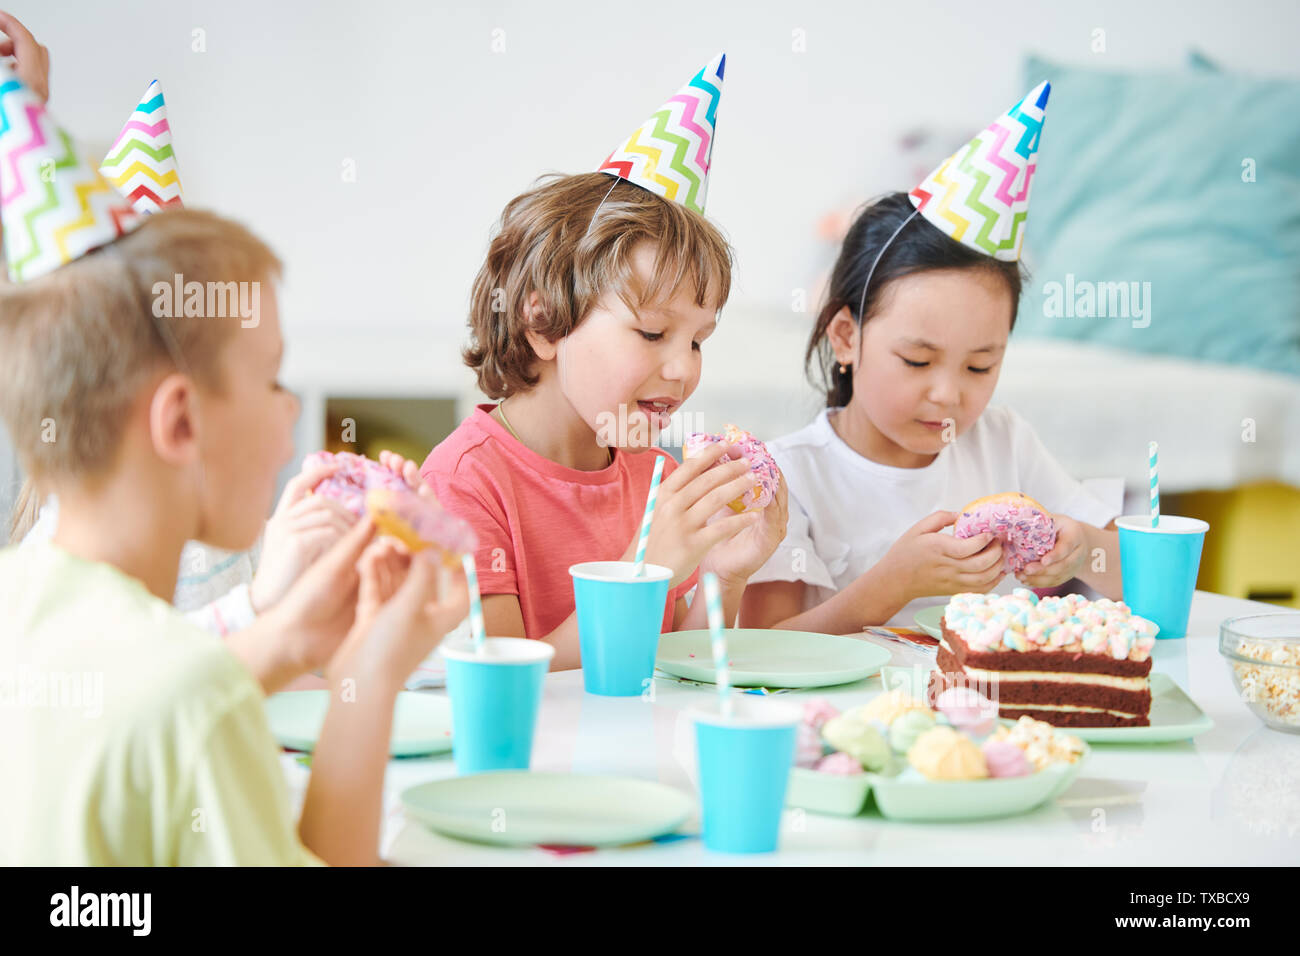 Gruppe der hungrigen Kinder essen glasierte Krapfen mit Streuseln Stockfoto